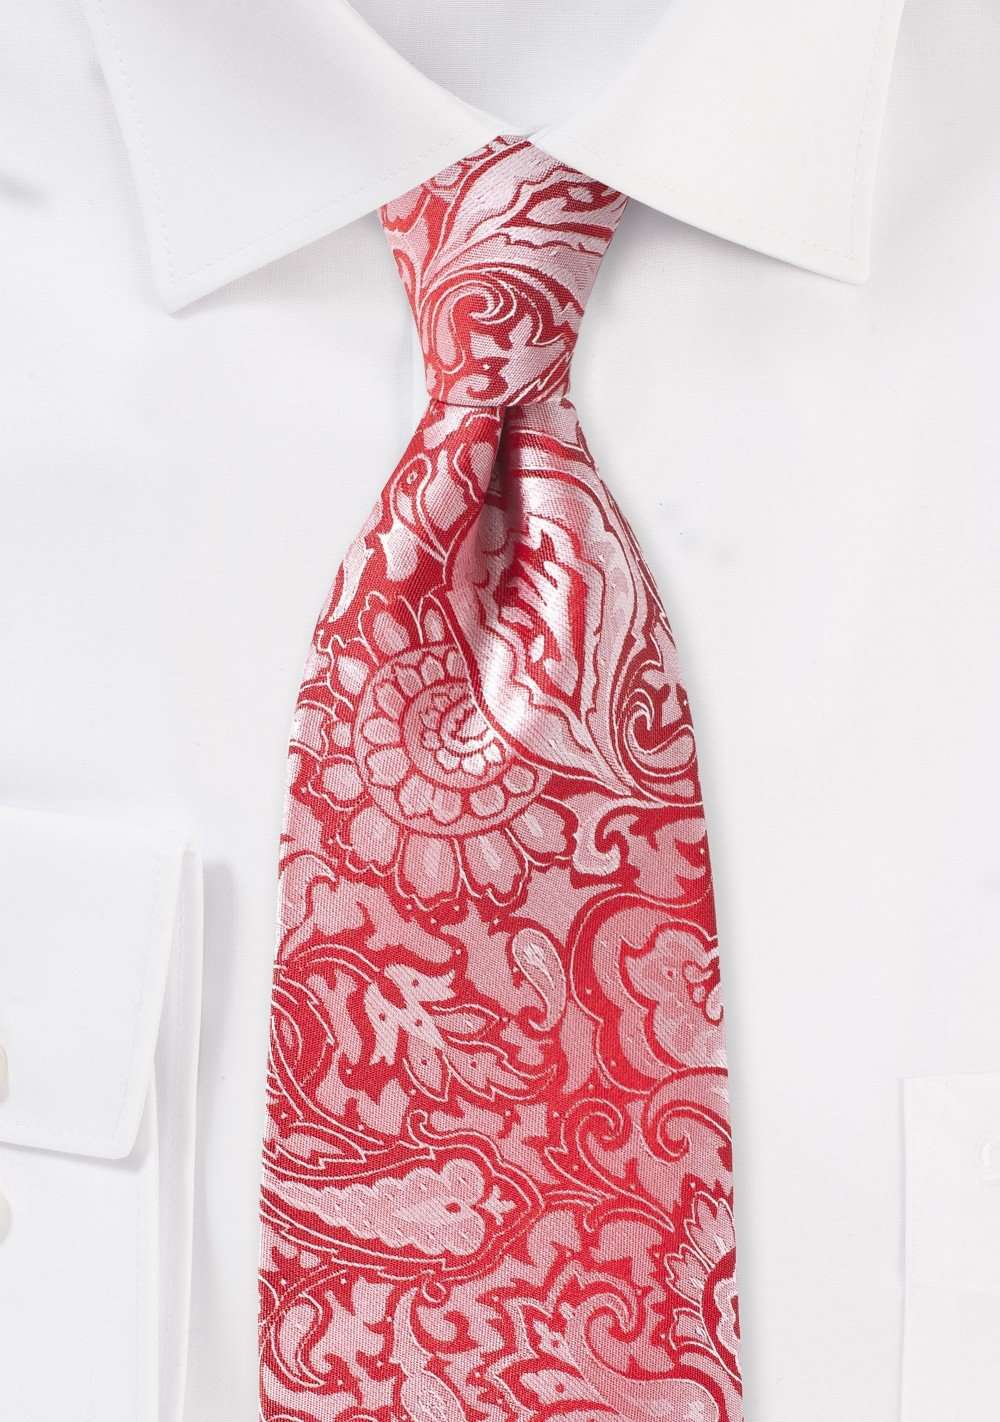 Vivid Poppy Floral Paisley Necktie - Men Suits